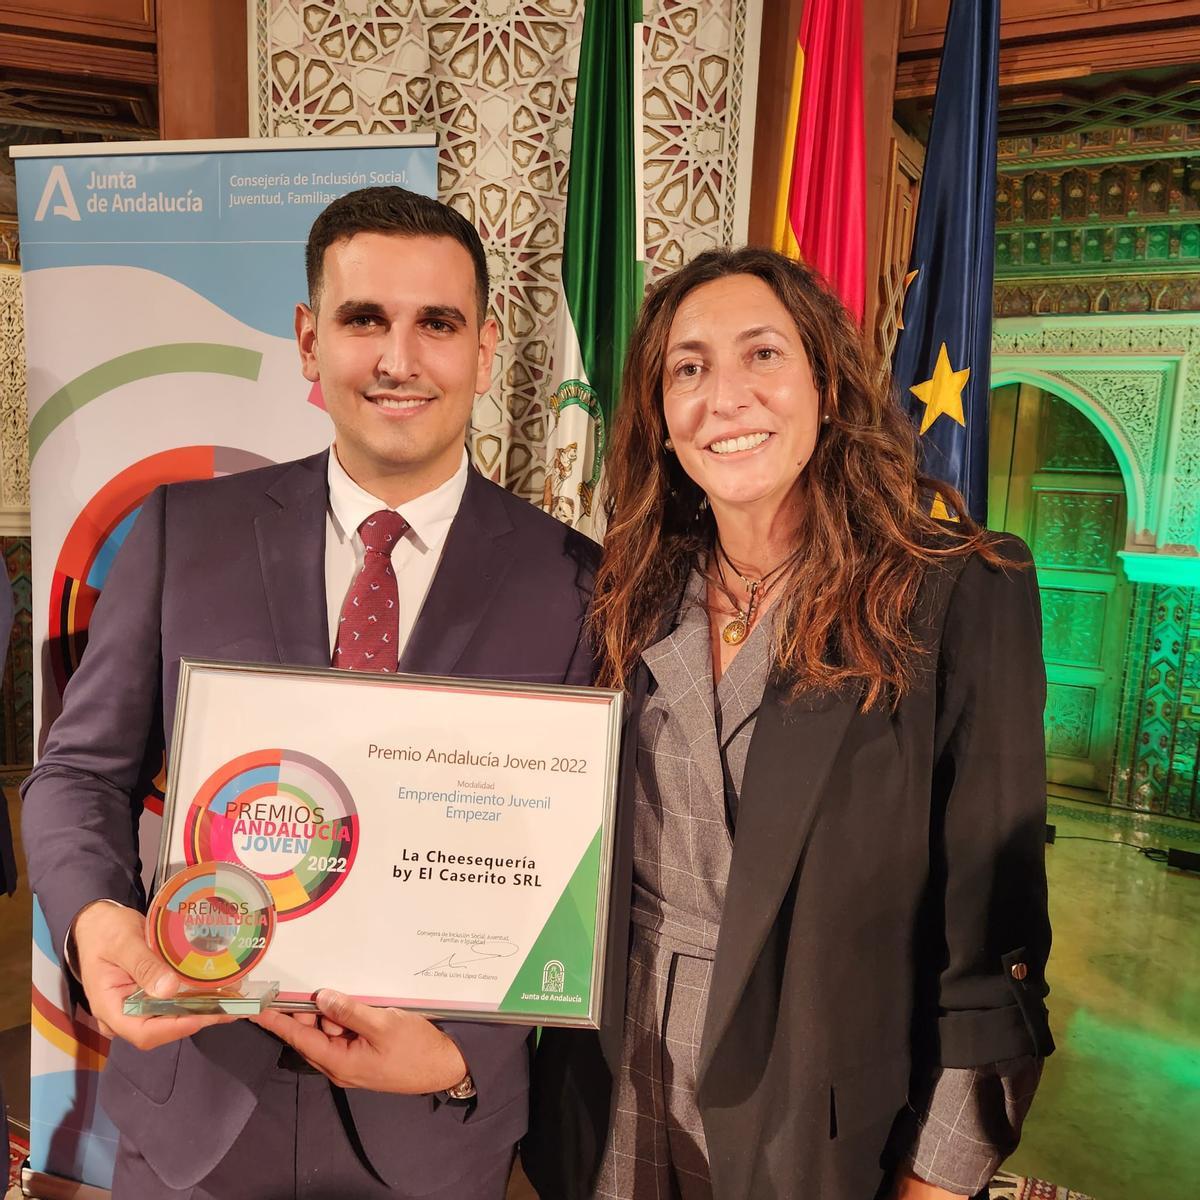 La Junta de Andalucía premió su joven labor emprendedora.